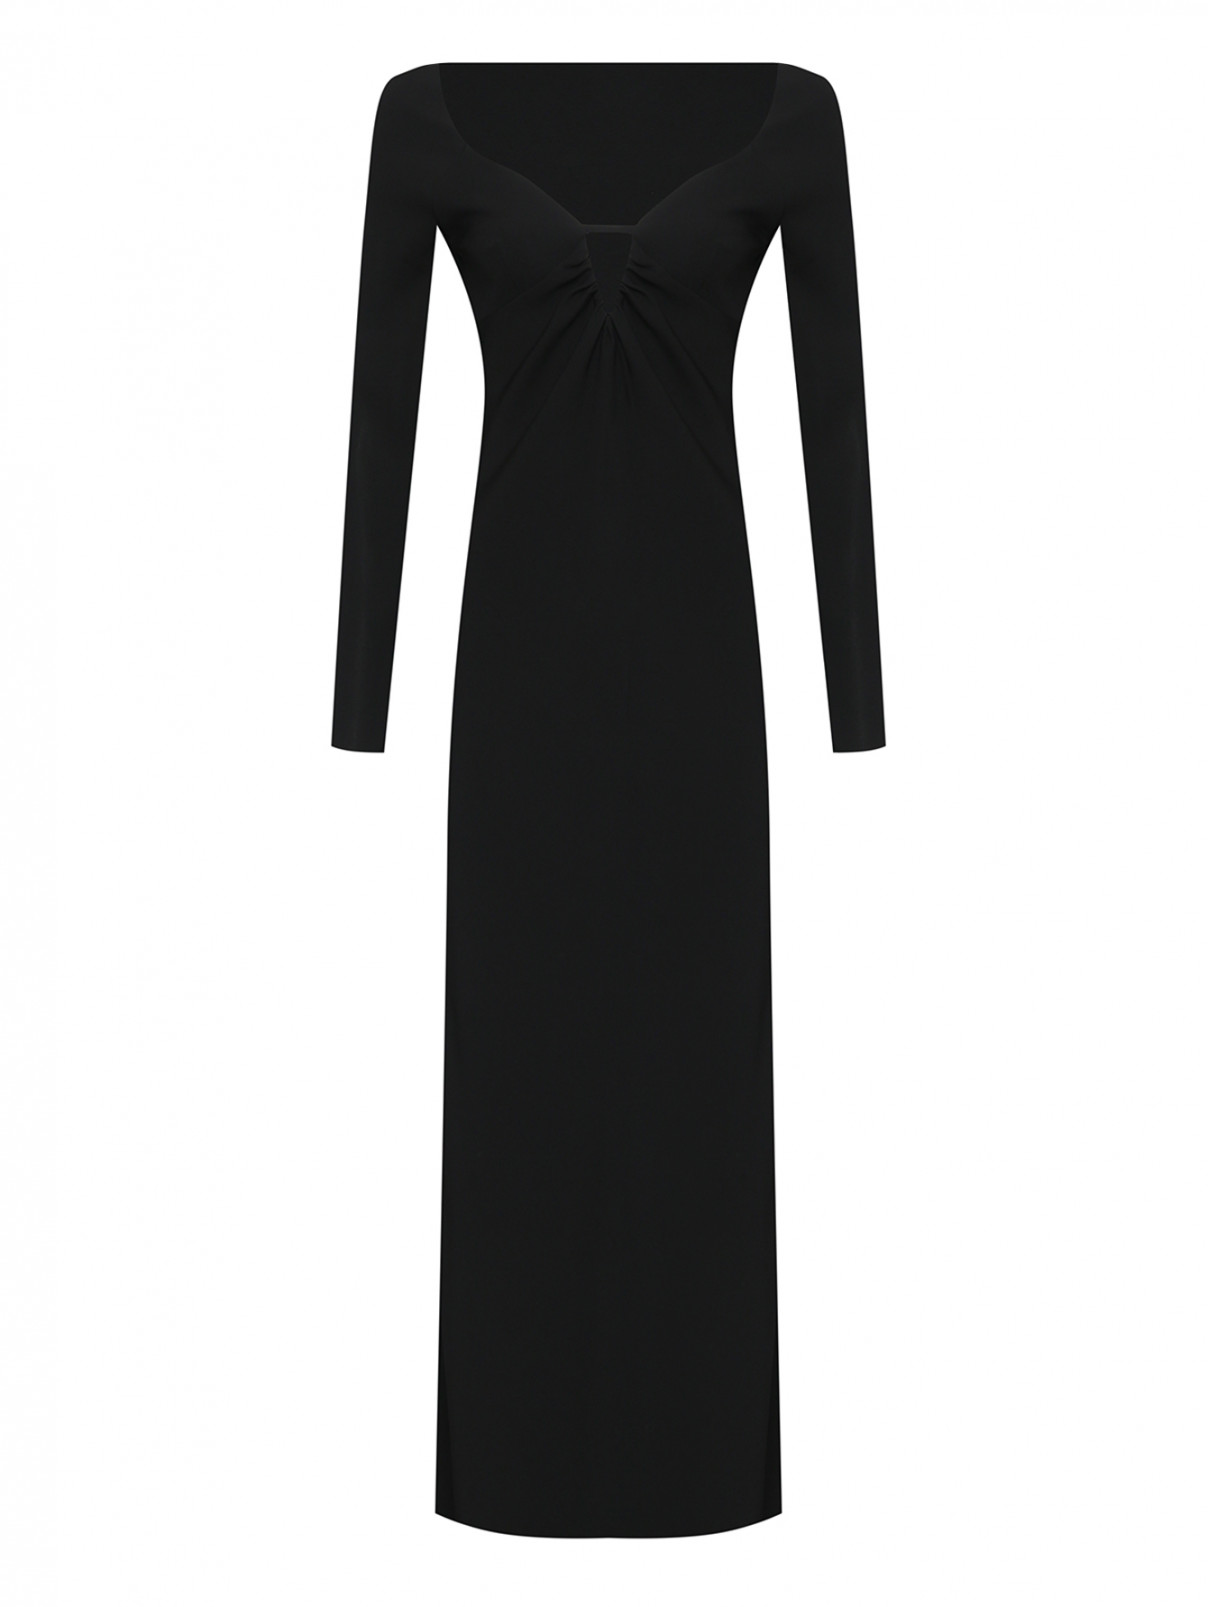 Платье с открытой спиной Max Mara  –  Общий вид  – Цвет:  Черный